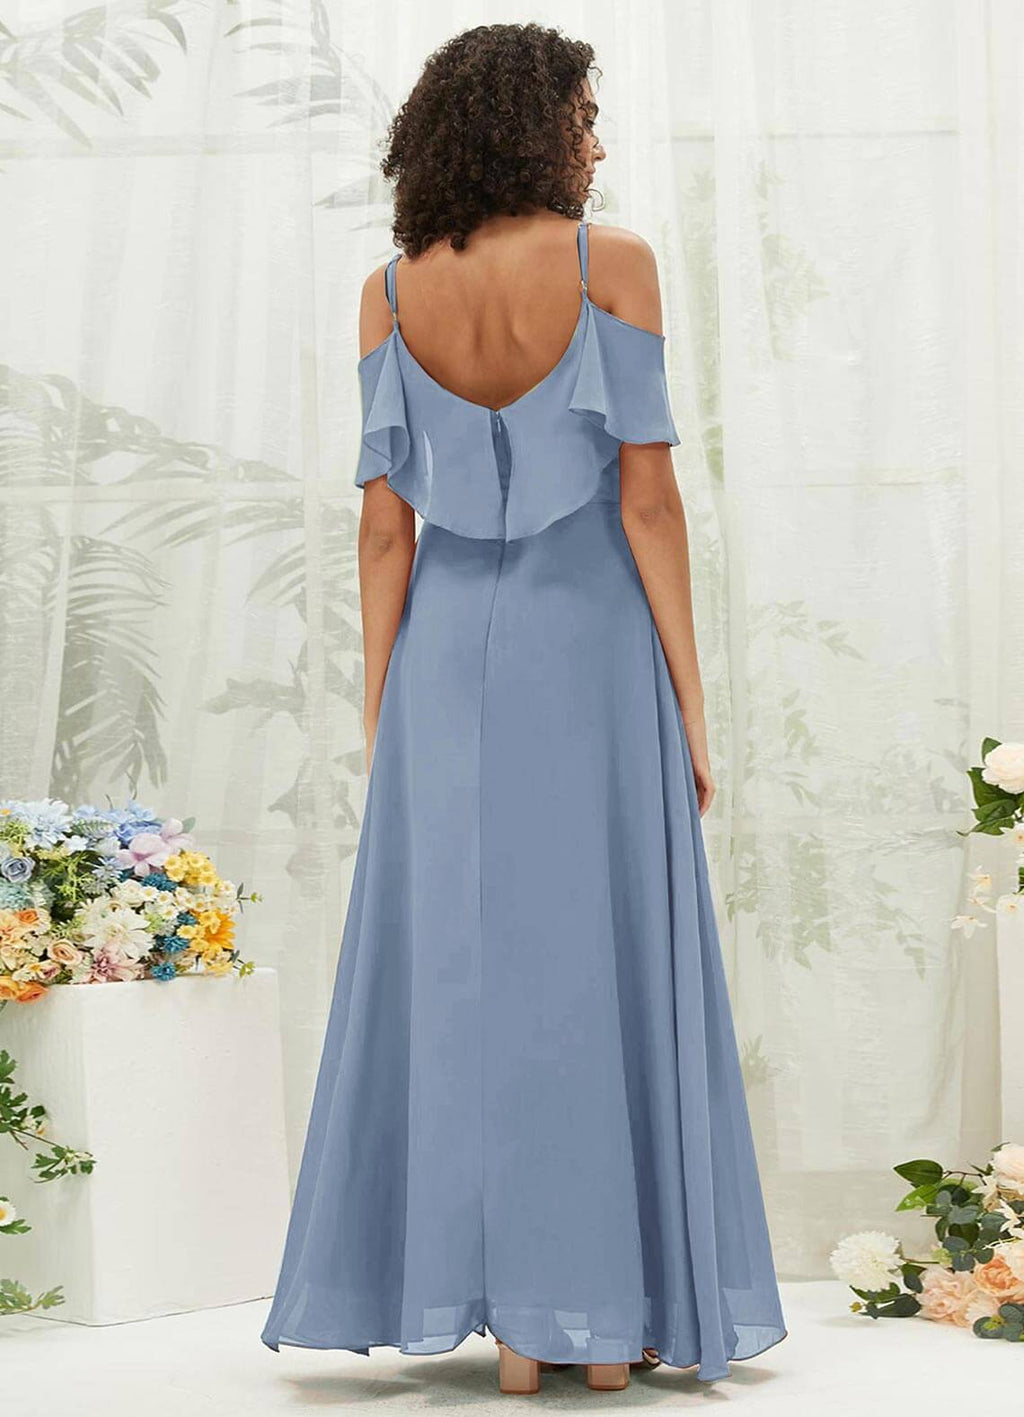 NZ Bridal Slate Blue Sweetheart Chiffon Flowy Maxi Bridesmaid Dress AM31003 Fiena a